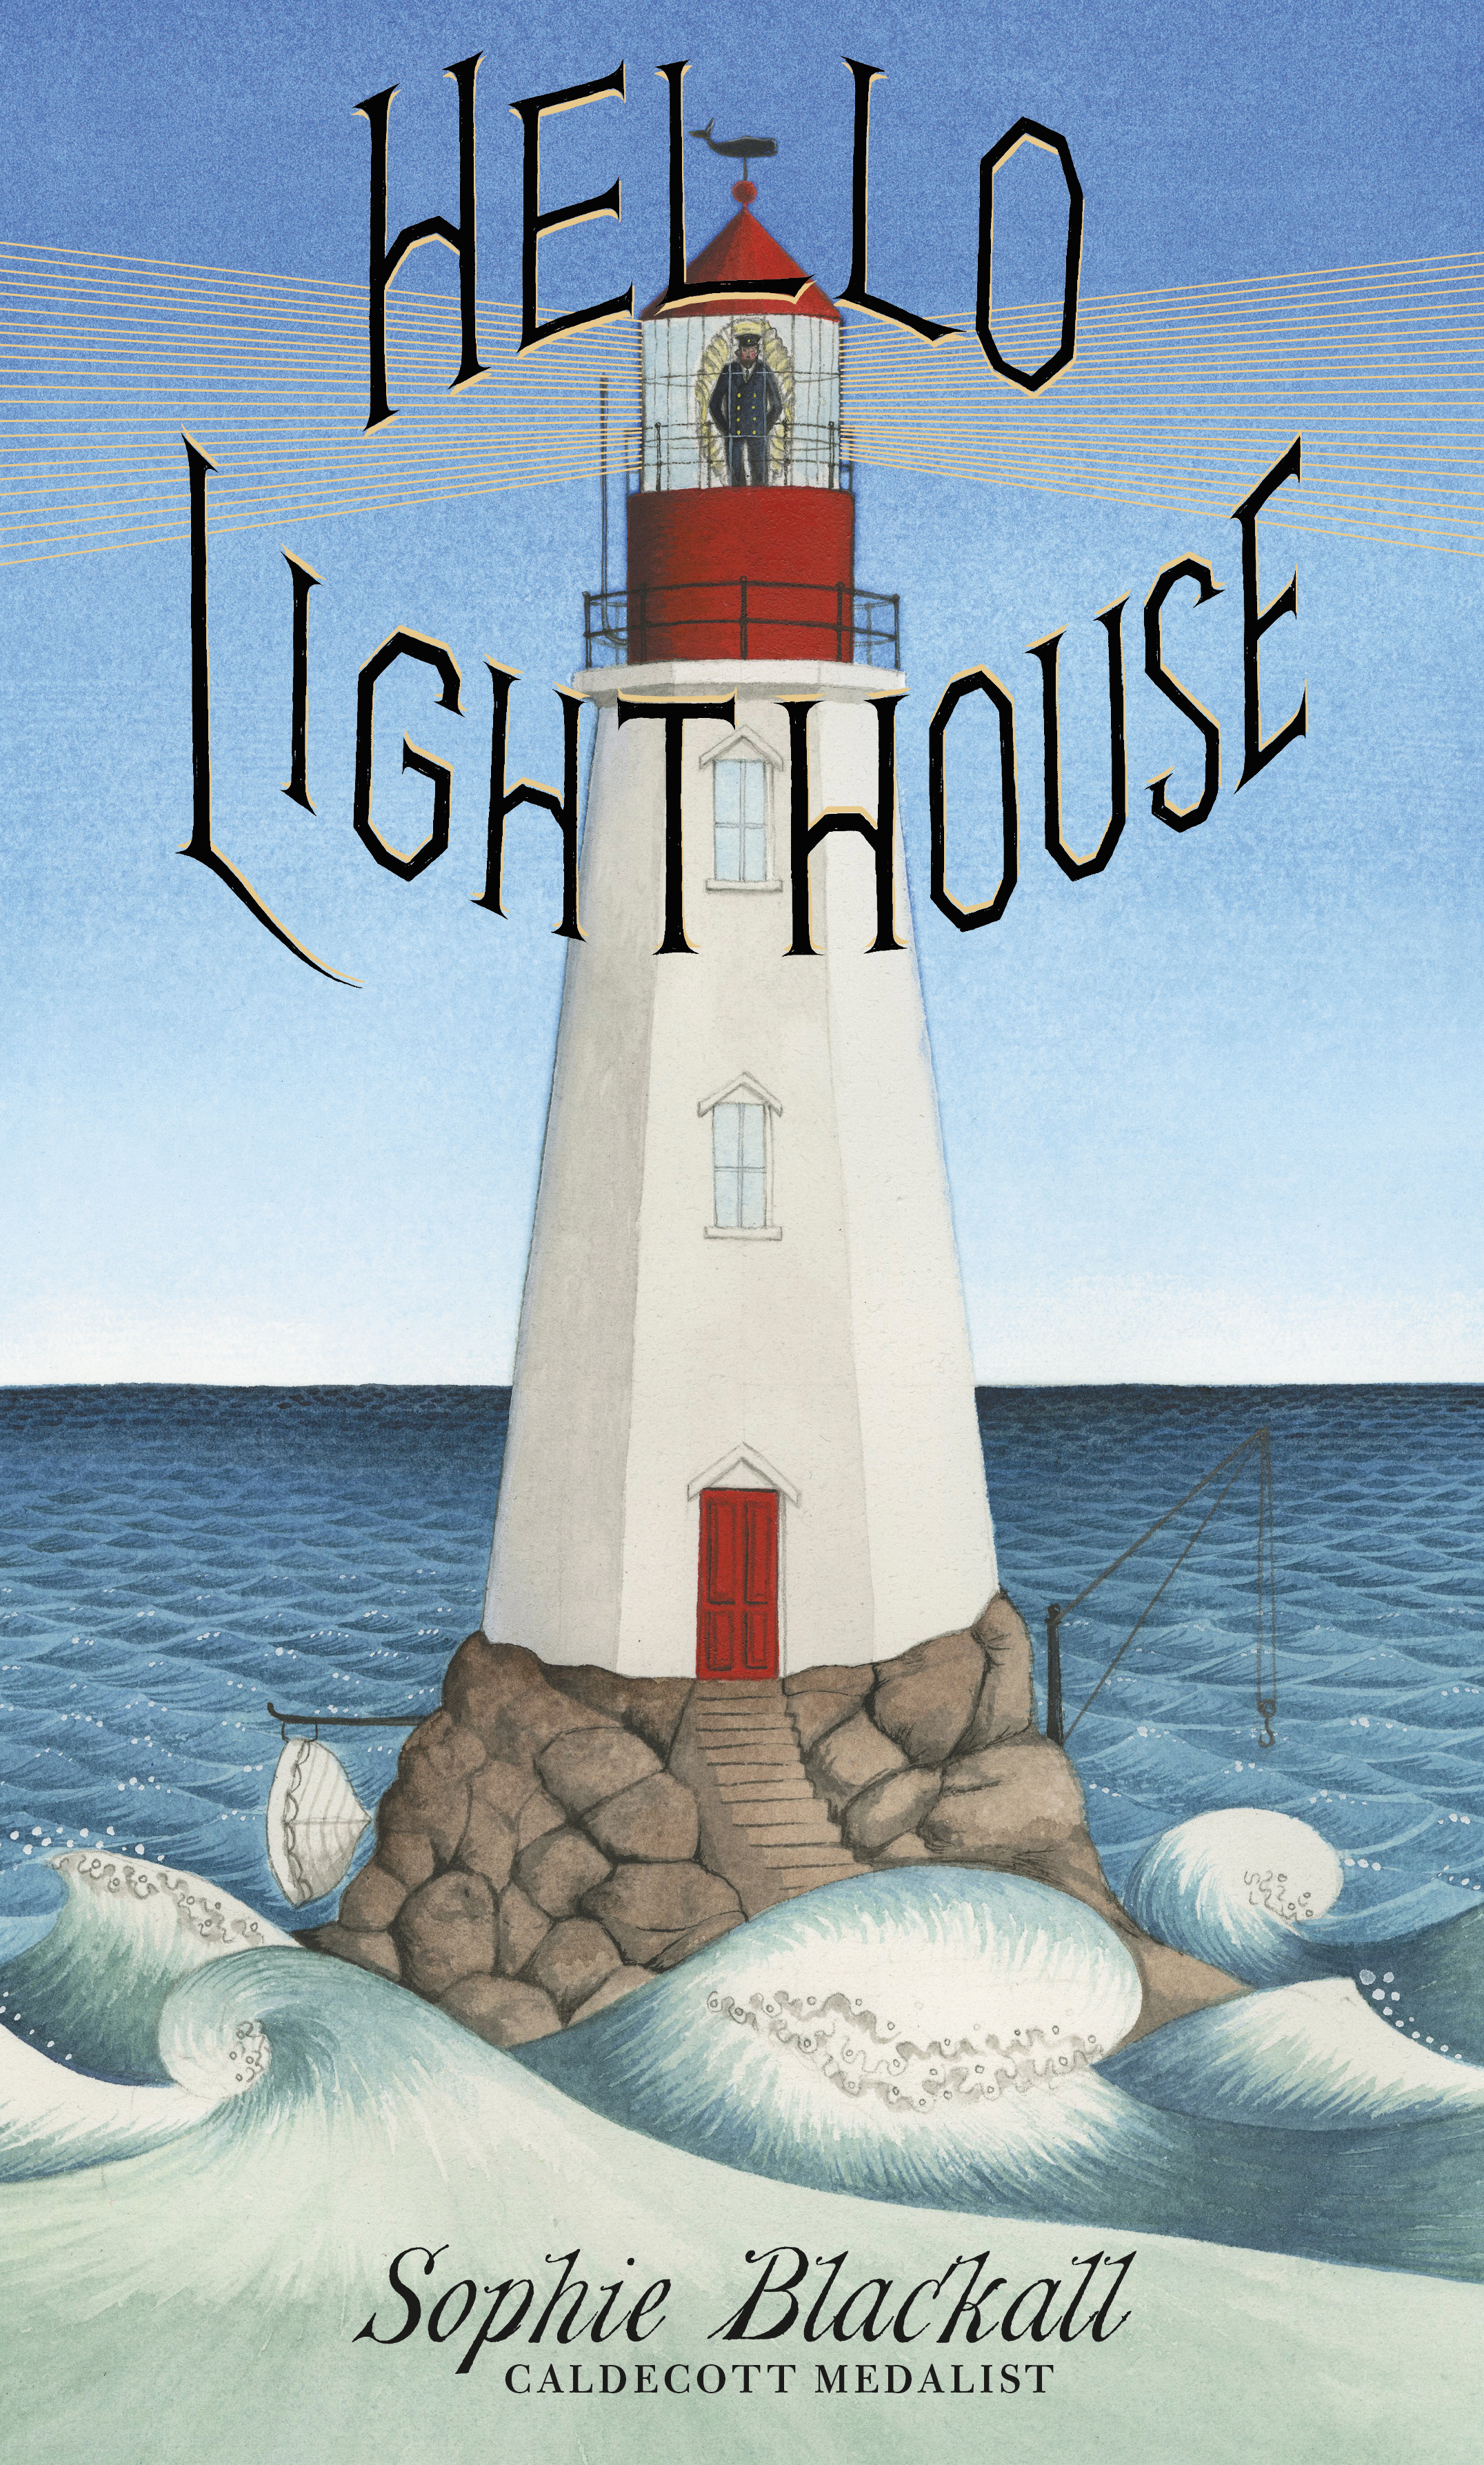 Hello Lighthouse Sophie Blackall